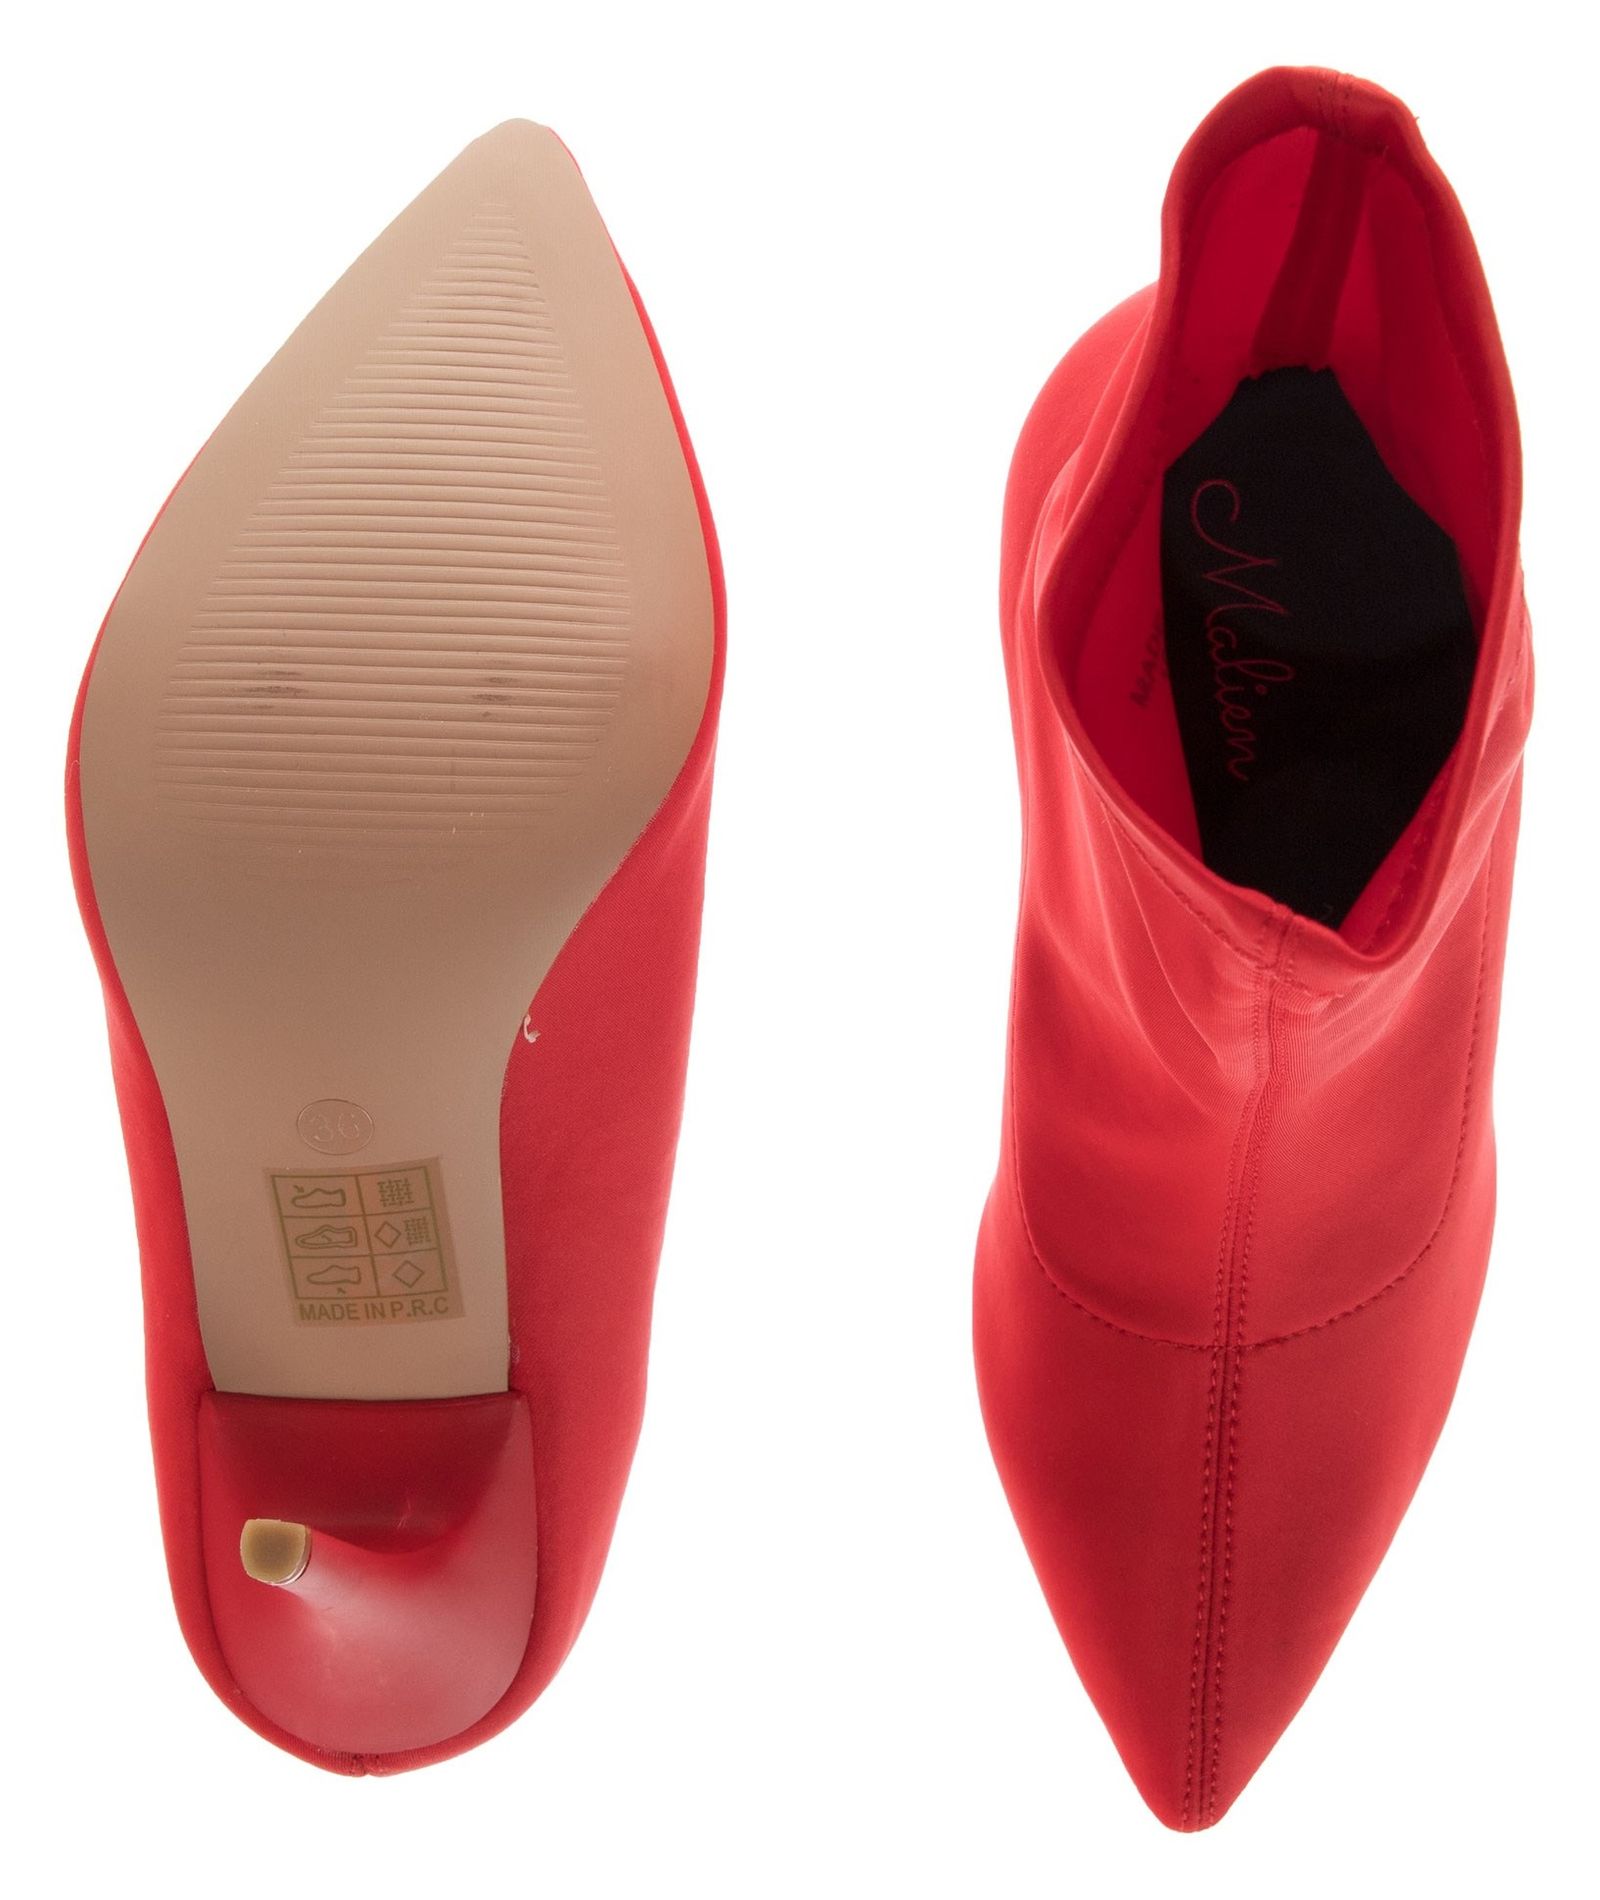 کفش پاشنه بلند زنانه - مالین - قرمز - 6